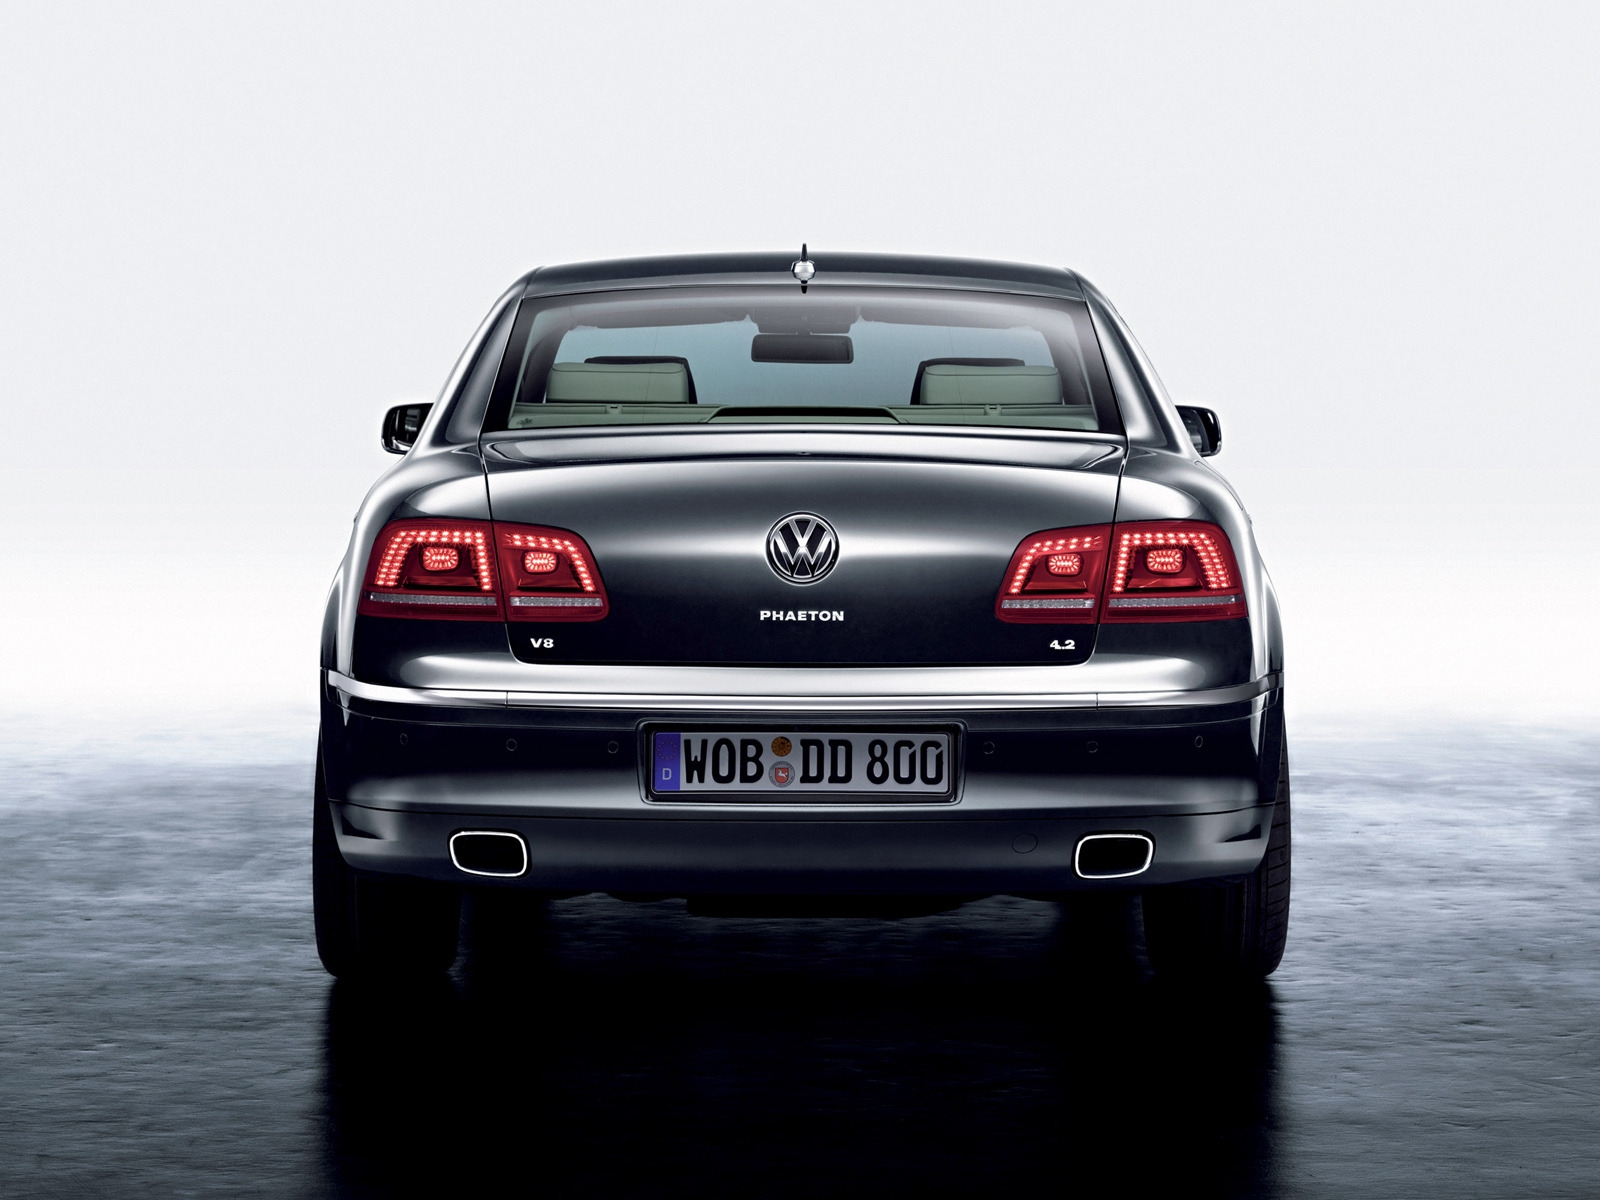 Volkswagen Phaeton Rear for 1600 x 1200 resolution